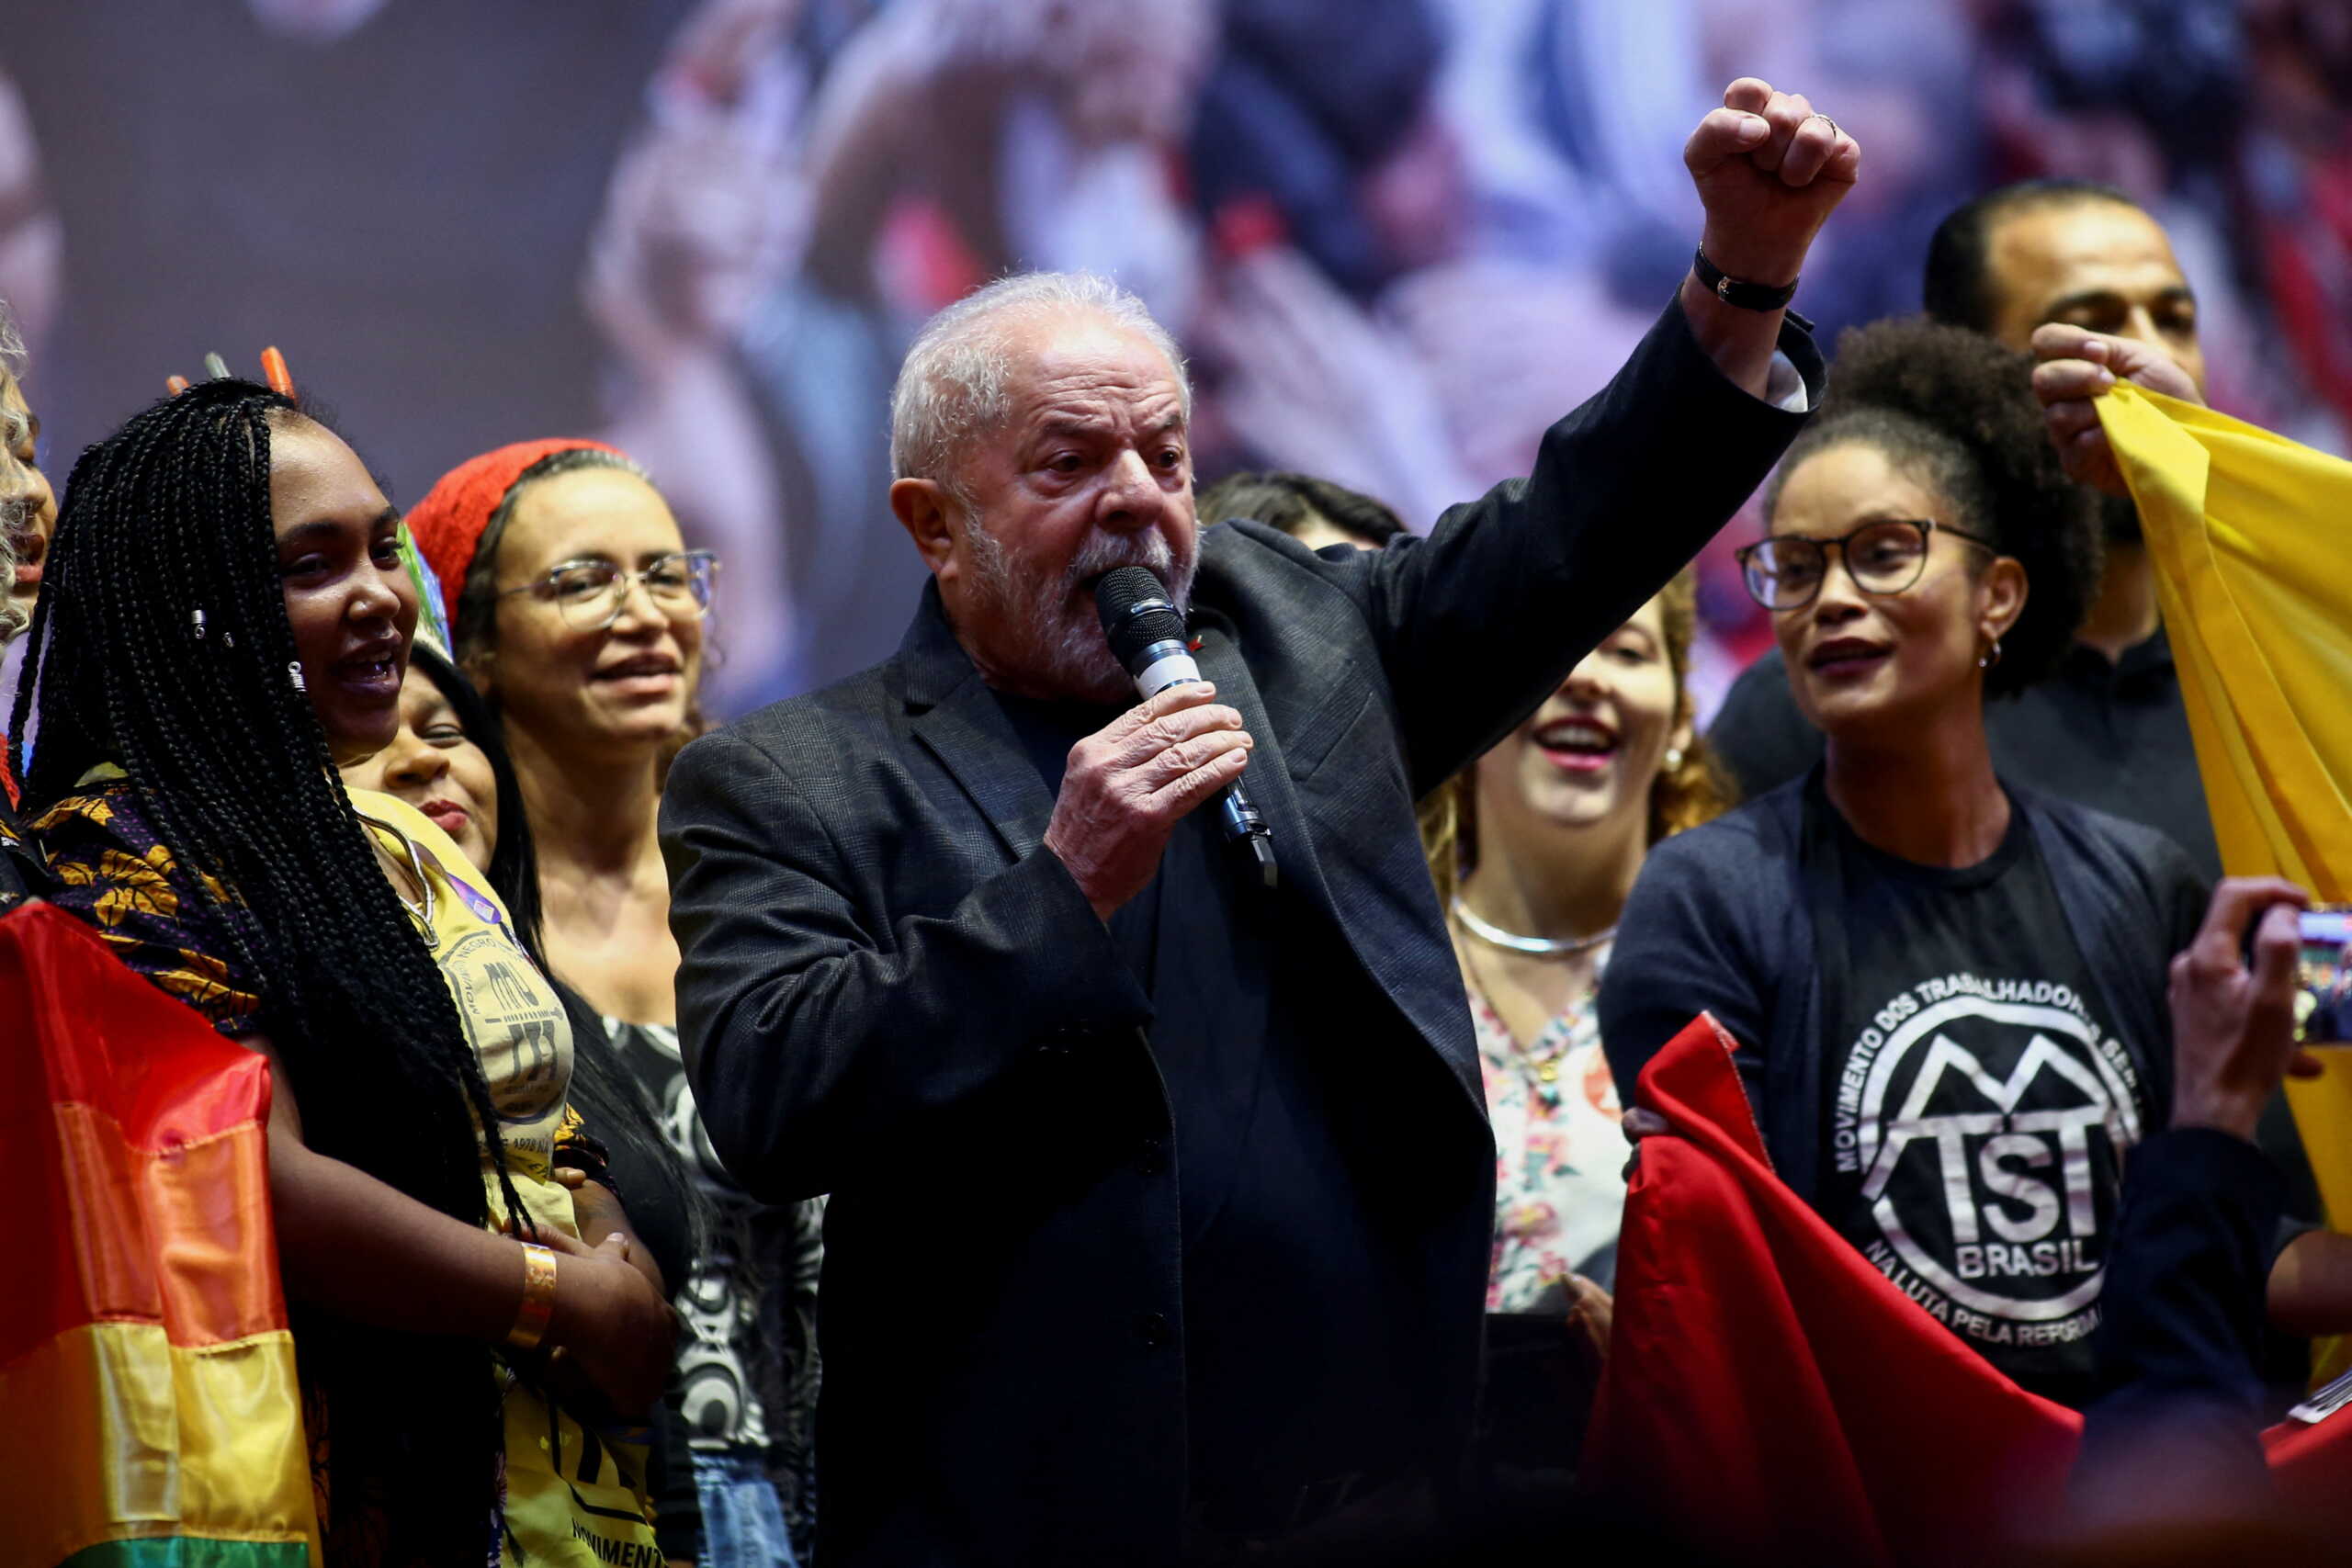 Βραζιλία: Ο Λούλα προηγείται με διψήφια διαφορά στις δημοσκοπήσεις του Μπολσονάριο